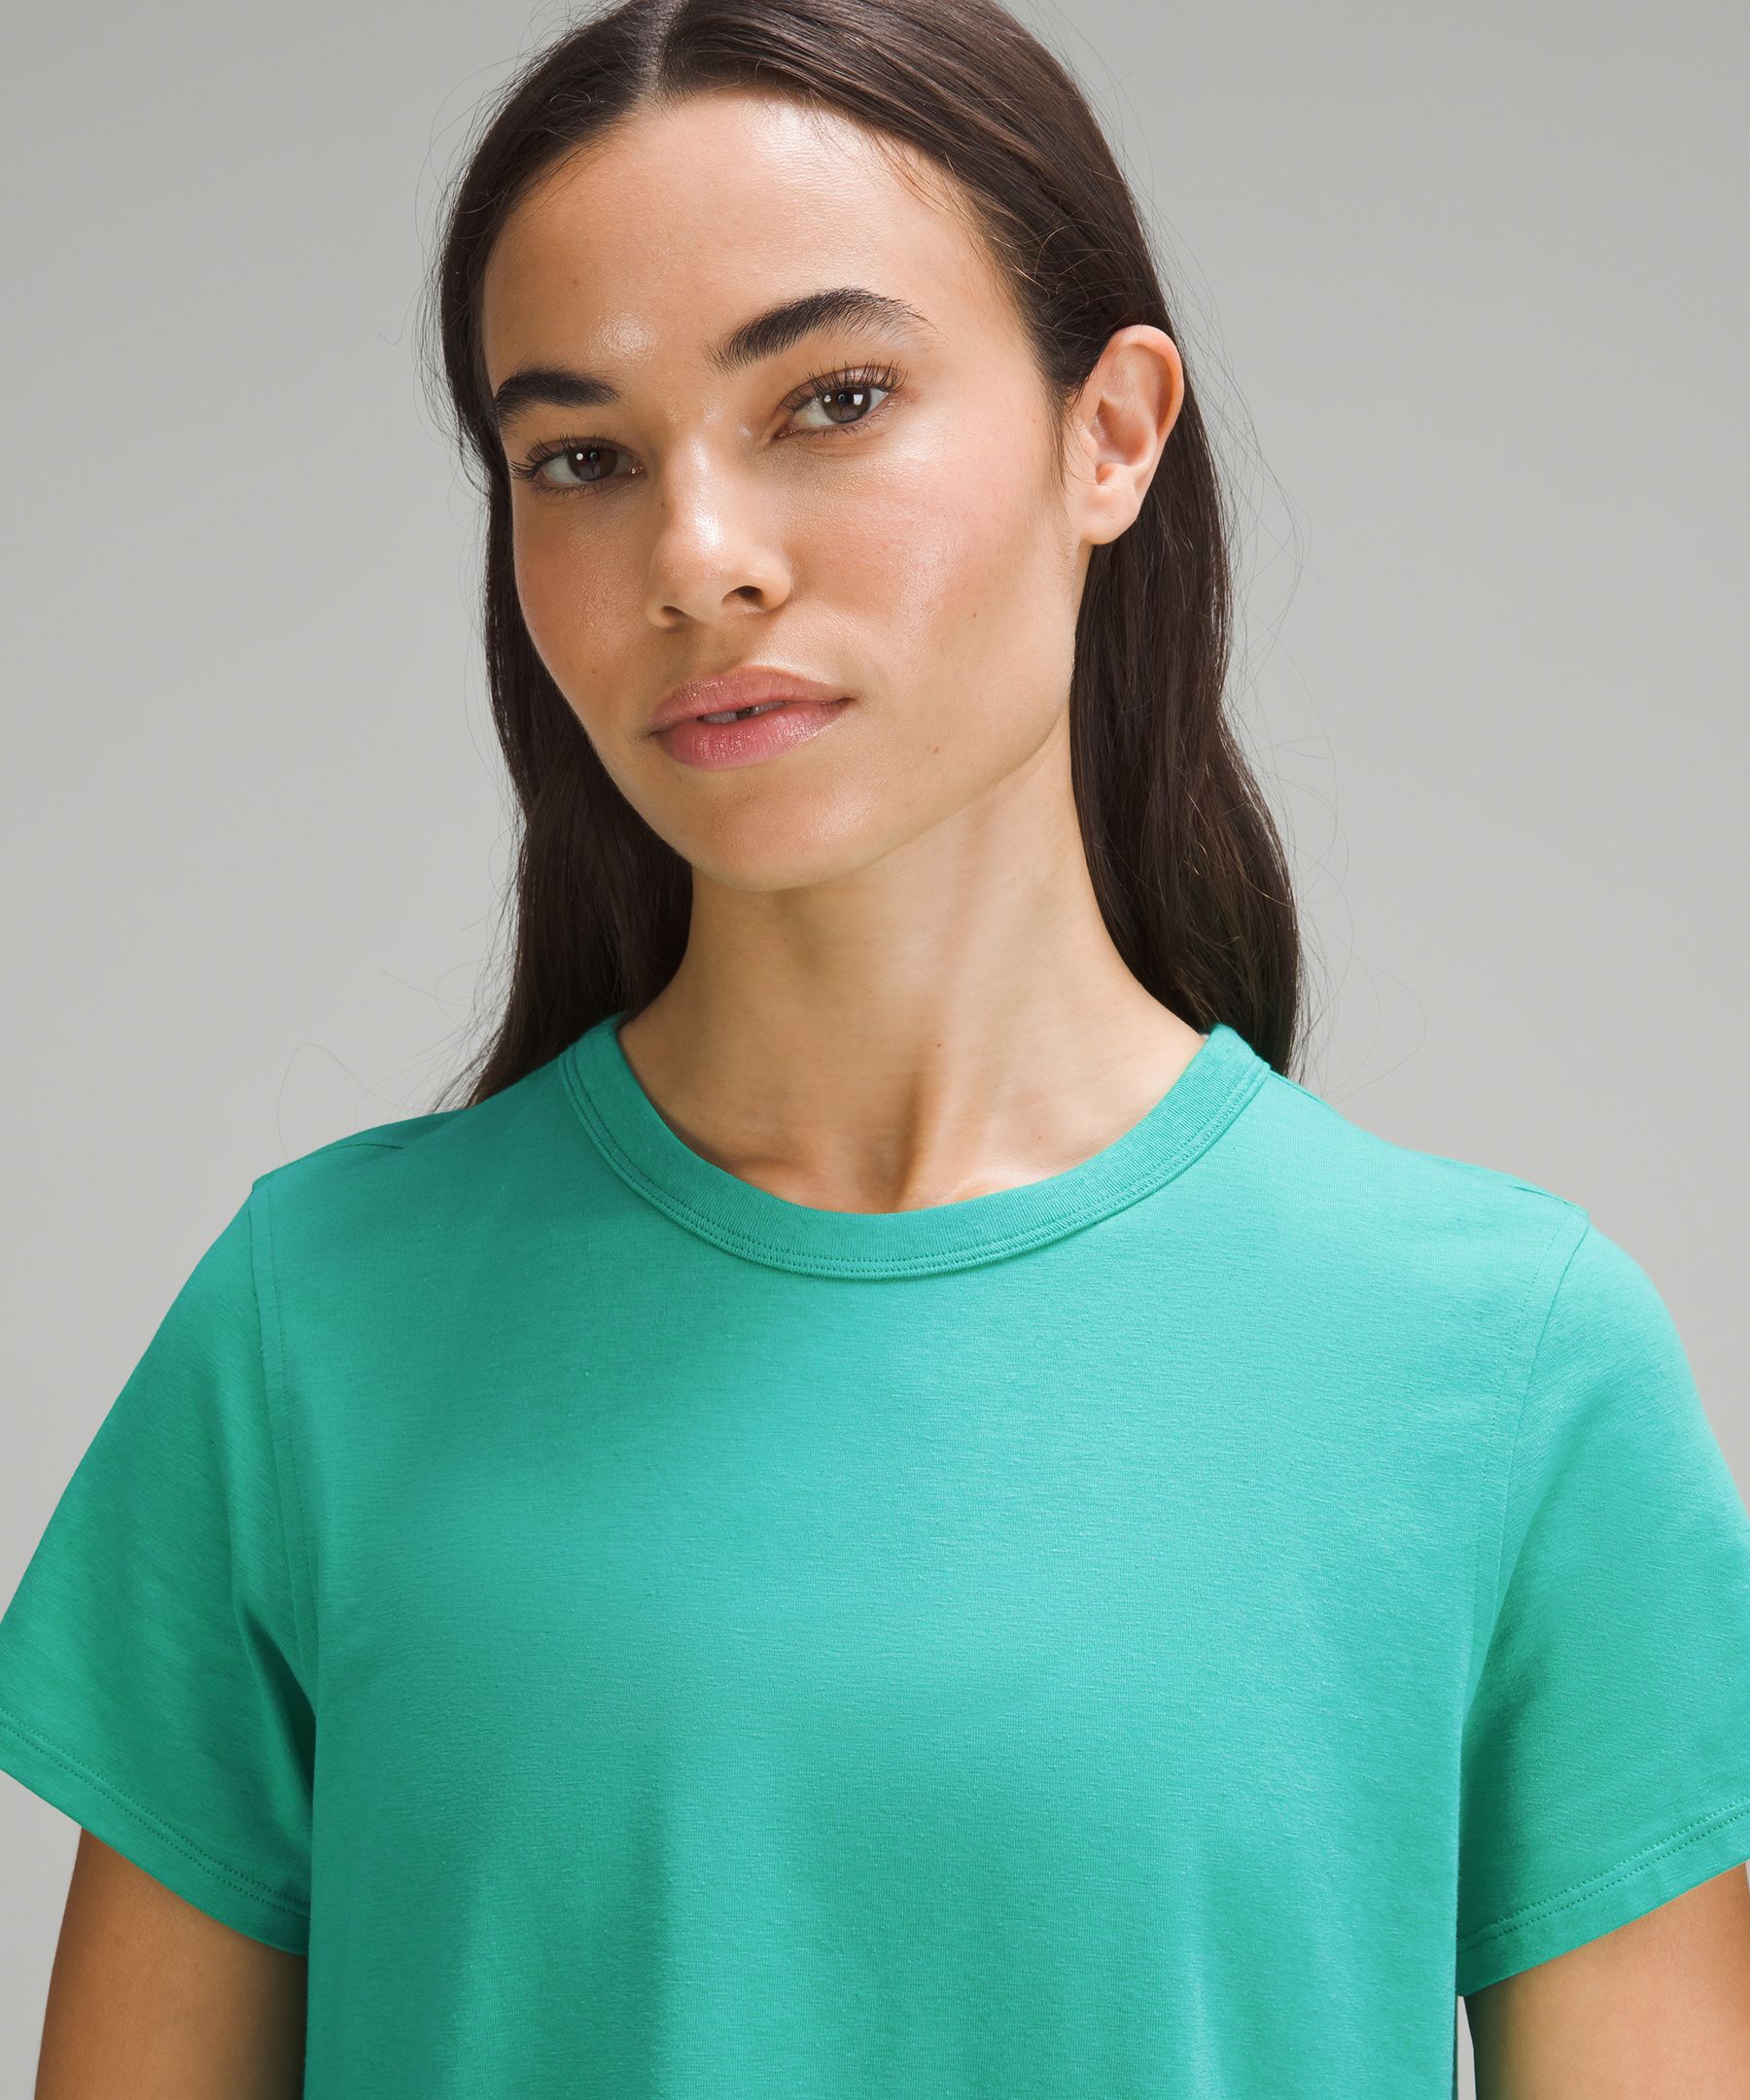 Lululemon Classic-Fit Cotton-Blend T-Shirt. 4